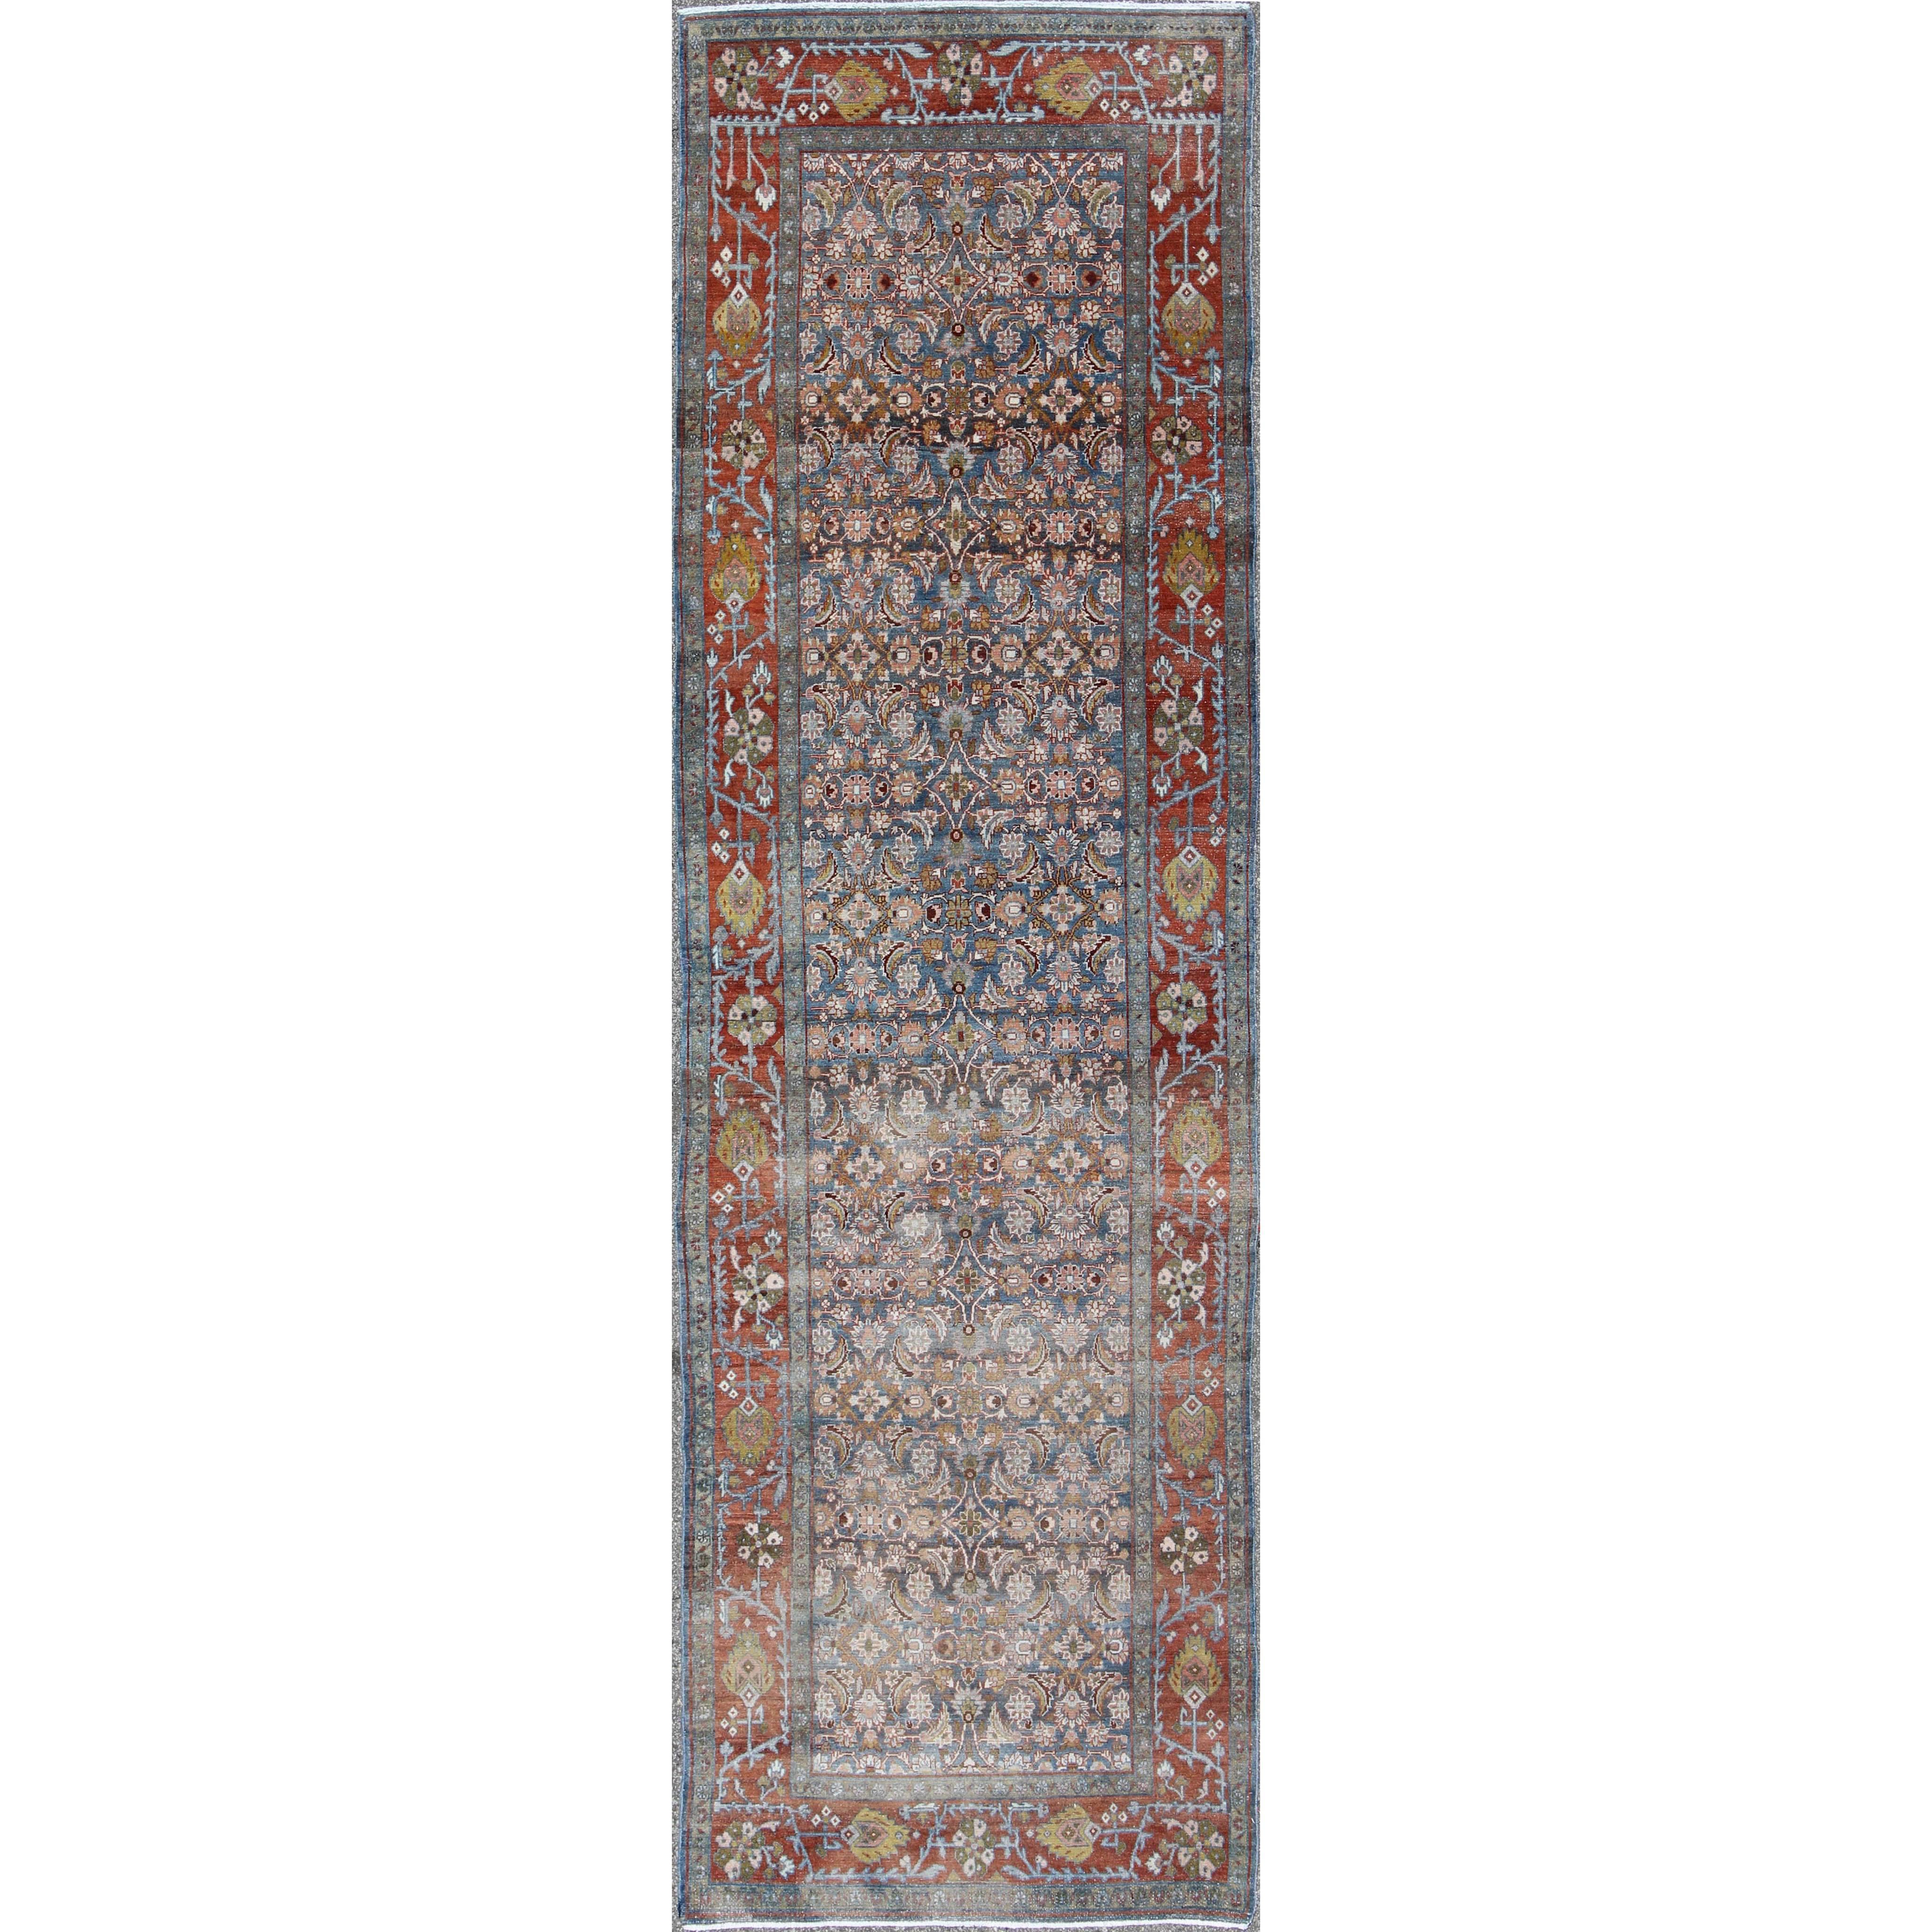 Tapis de couloir persan ancien Malayer bleu, rouge et vert avec motif floral géométrique